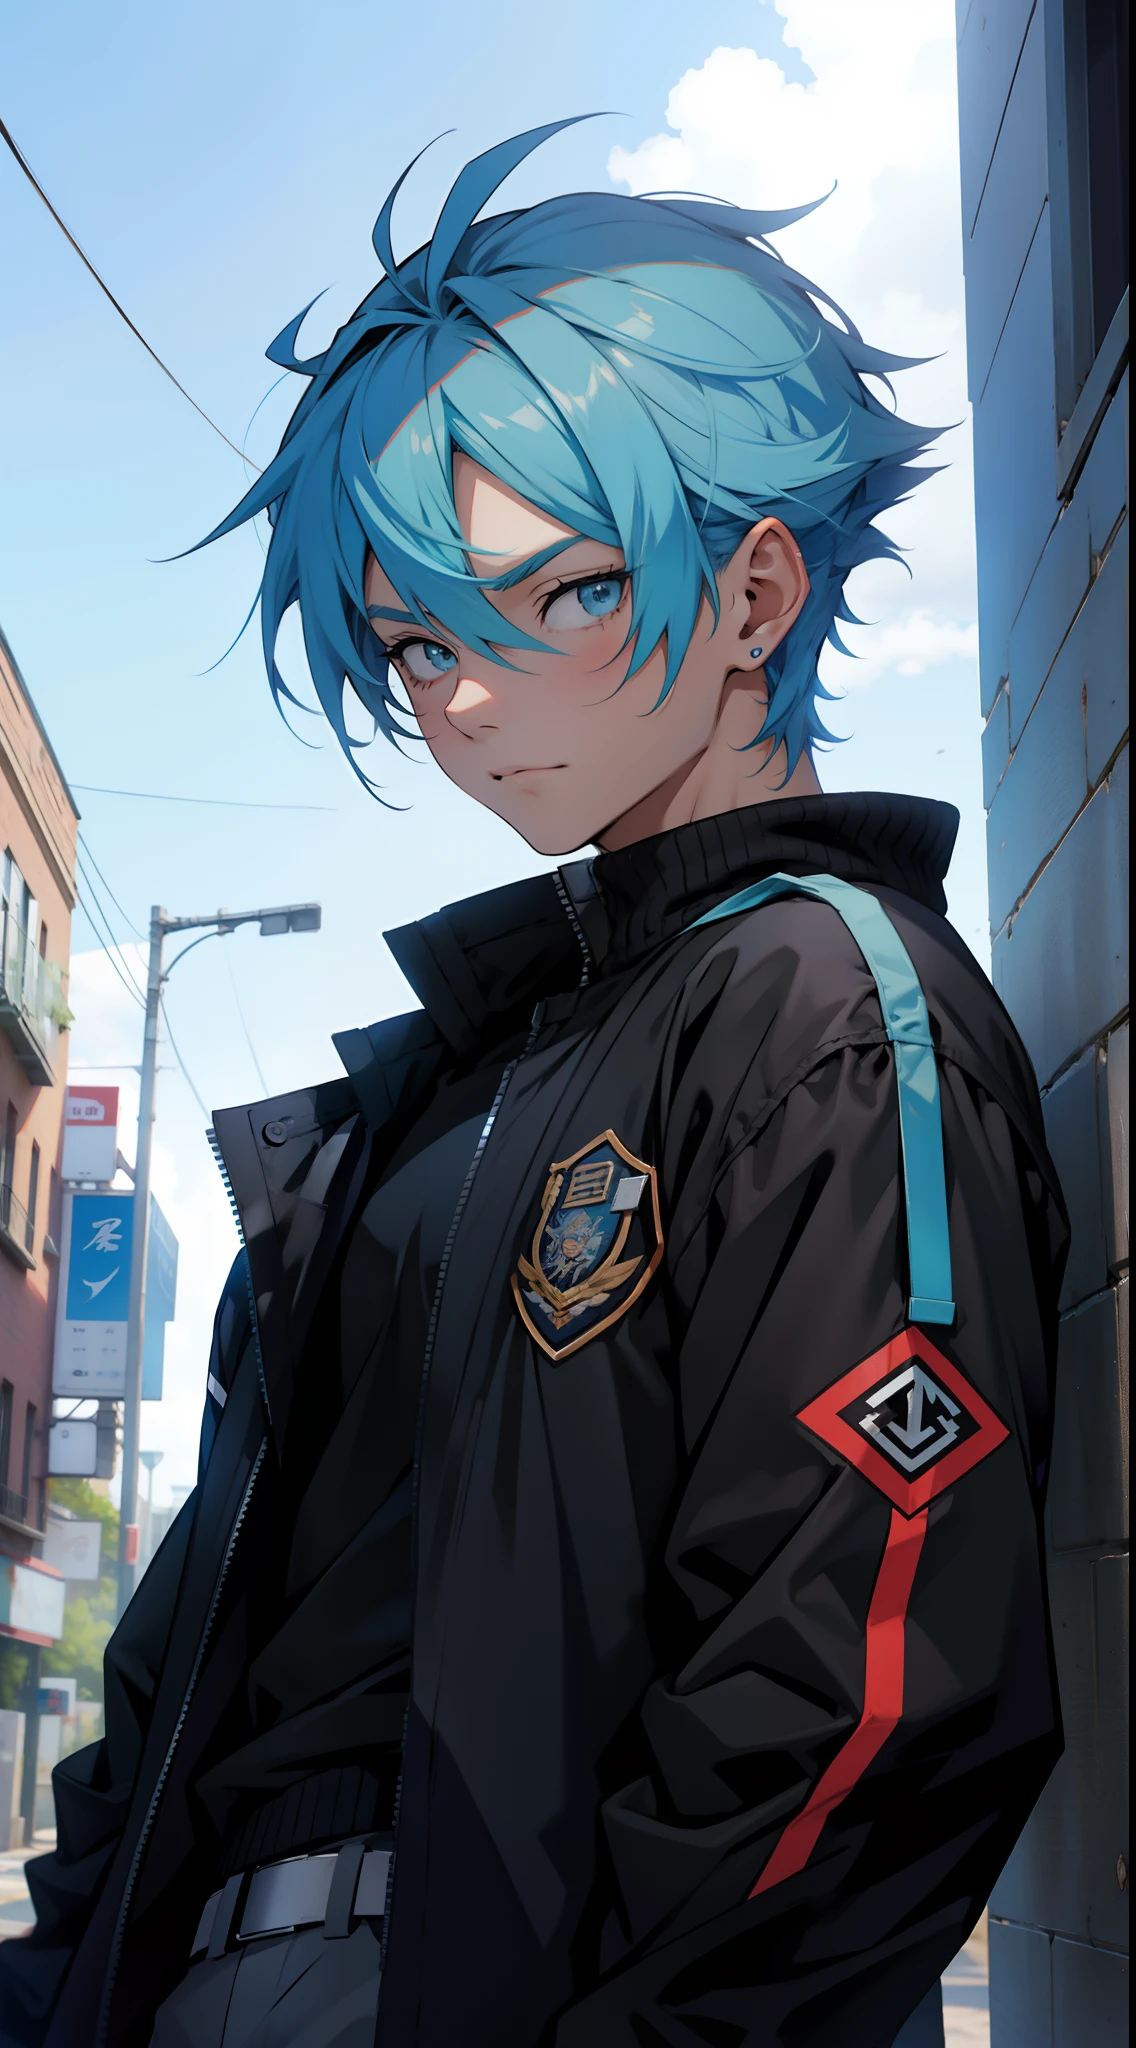 un chico adolescente anime, con pelos azules cortos, Vistiendo una chaqueta negra